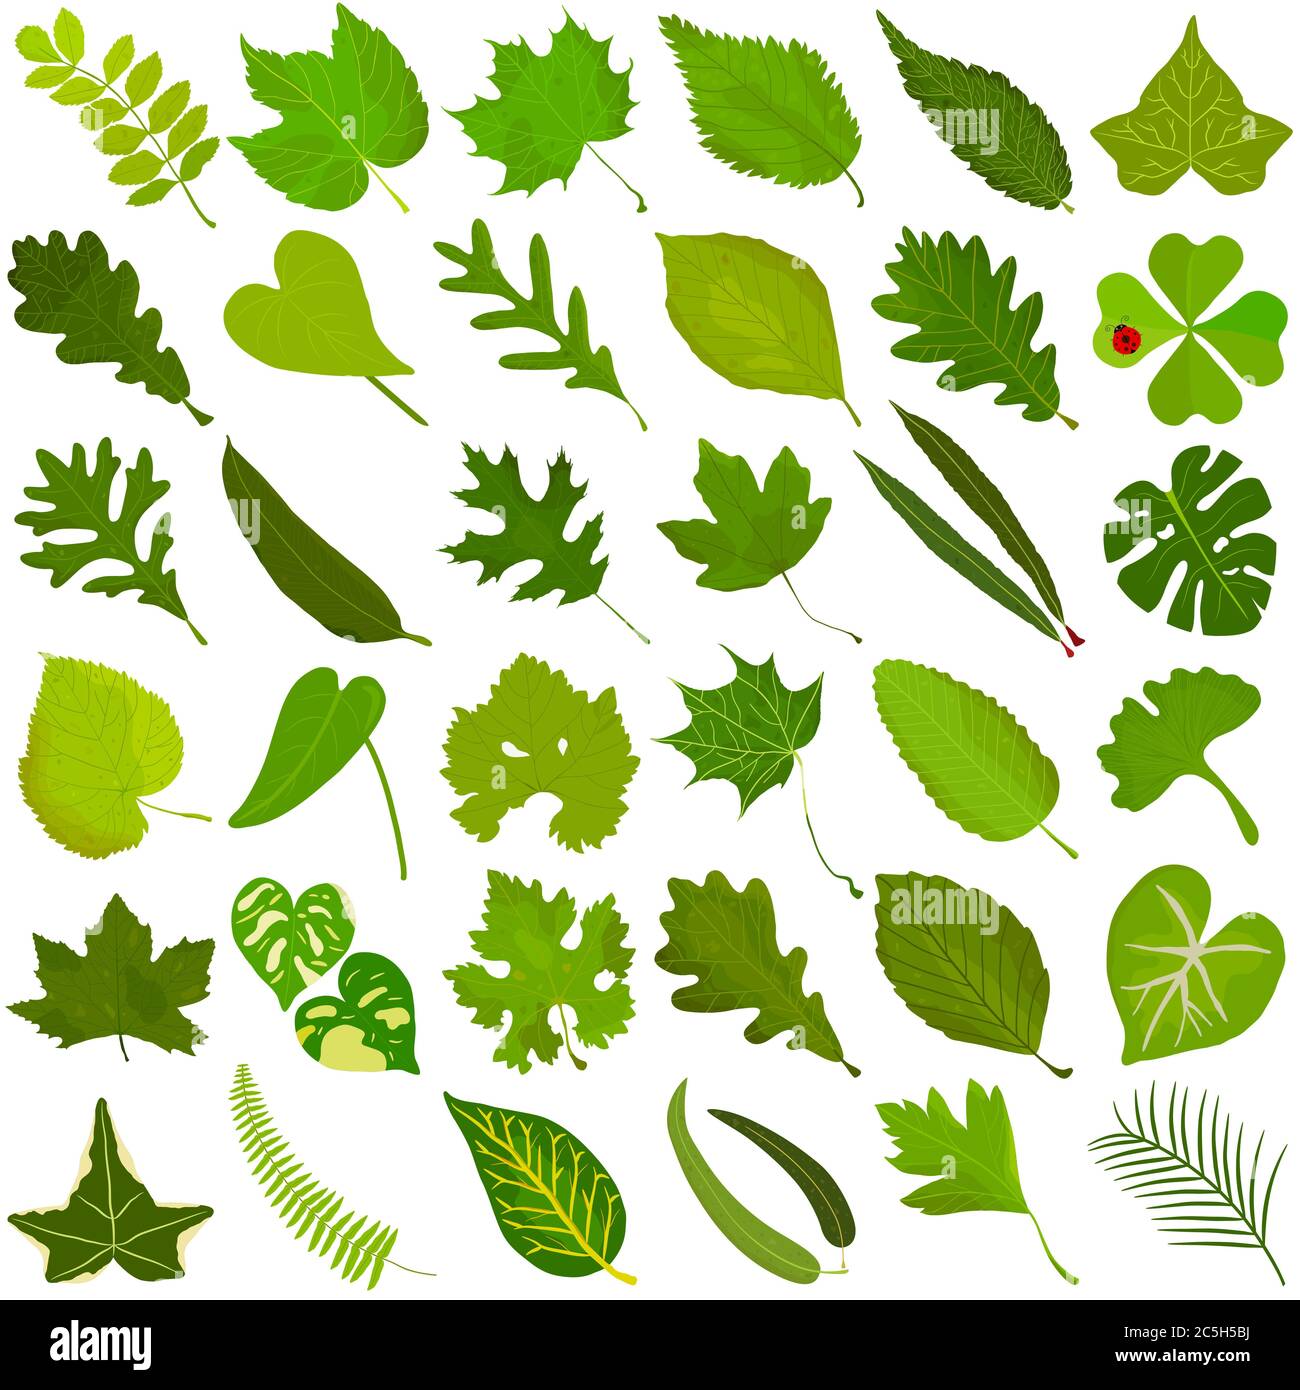 Handgezeichnetes Sommer grünes Blatt, bunte Illustration Vektor der grünen Blätter Doodle Elemente auf weiß Stock Vektor